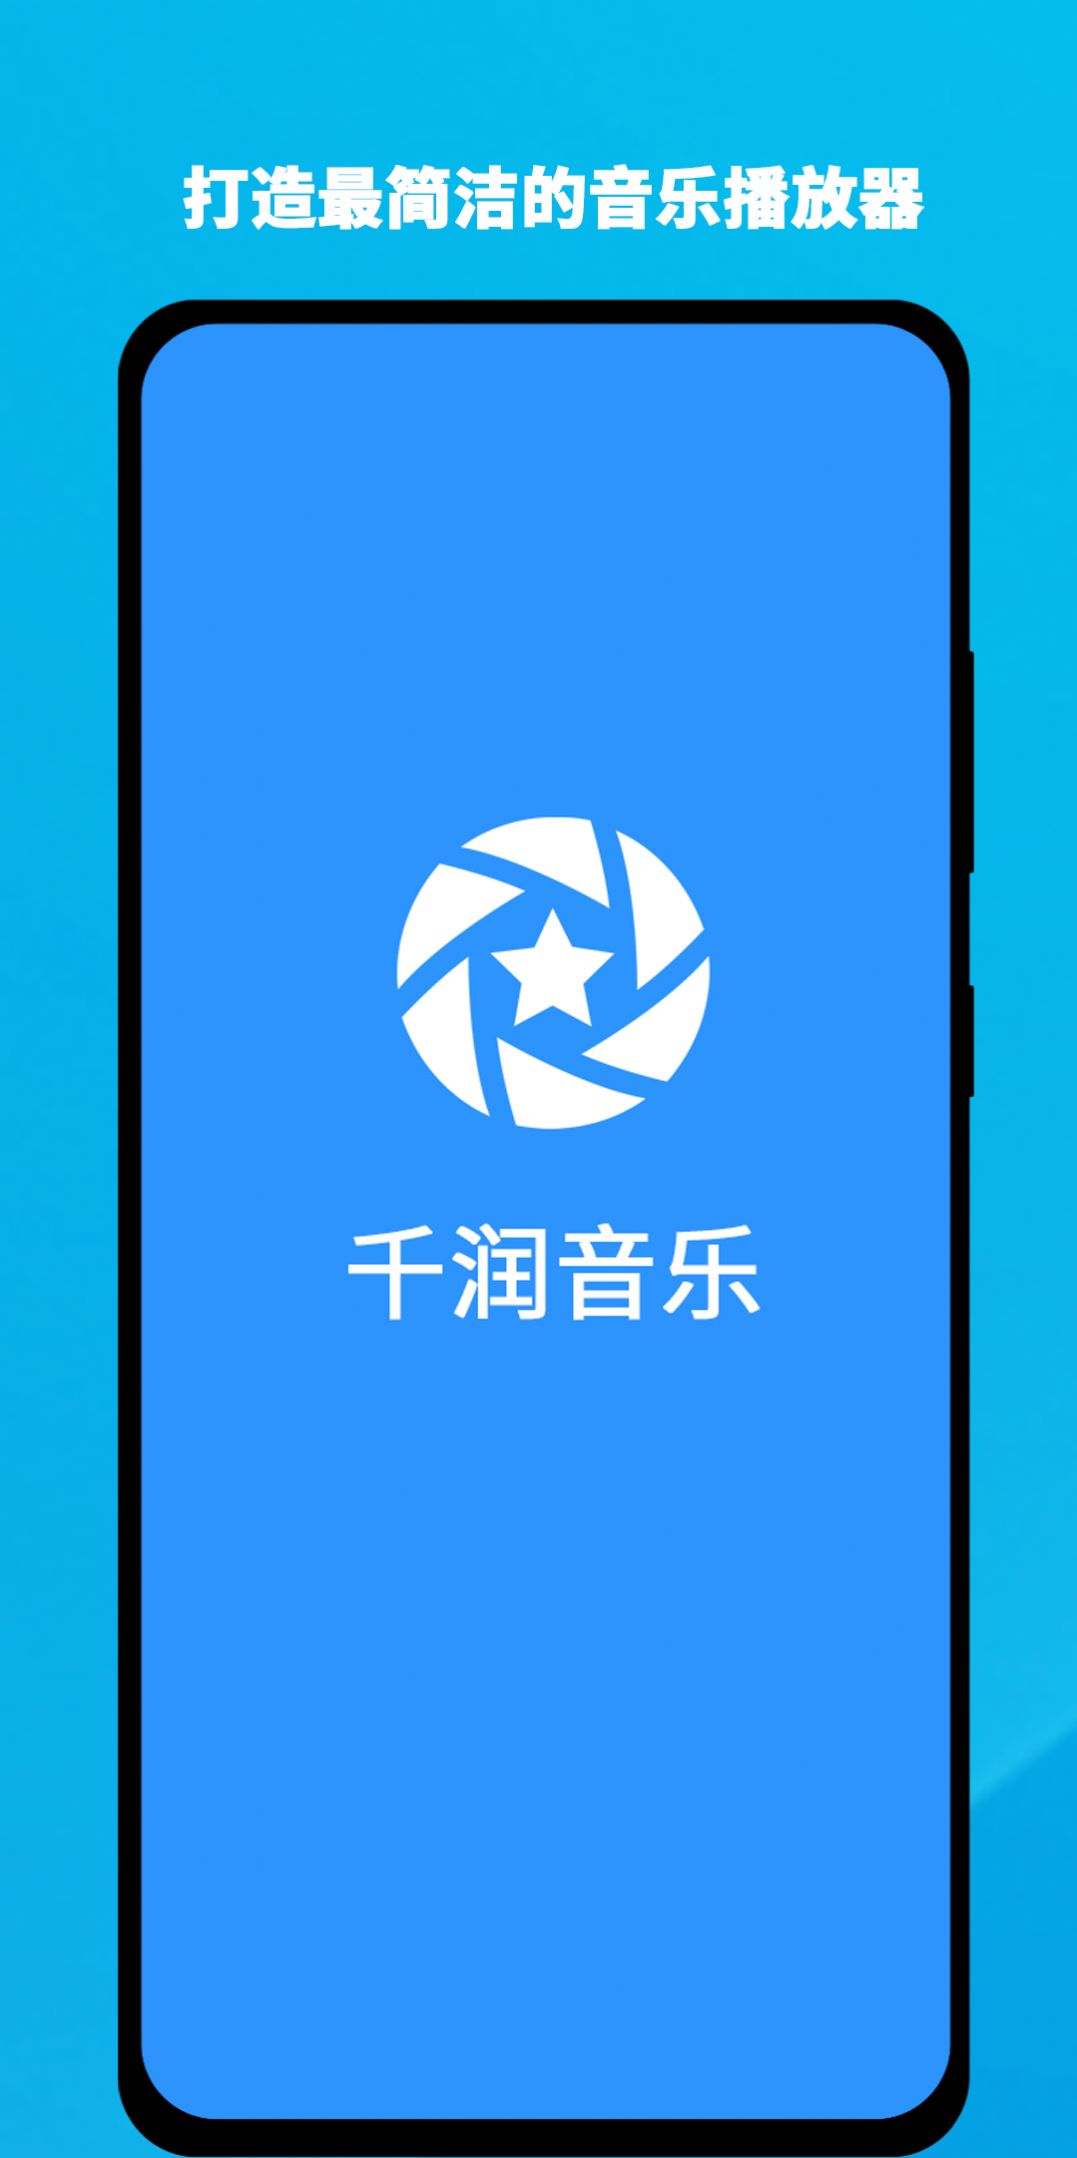 千润音乐app.jpg